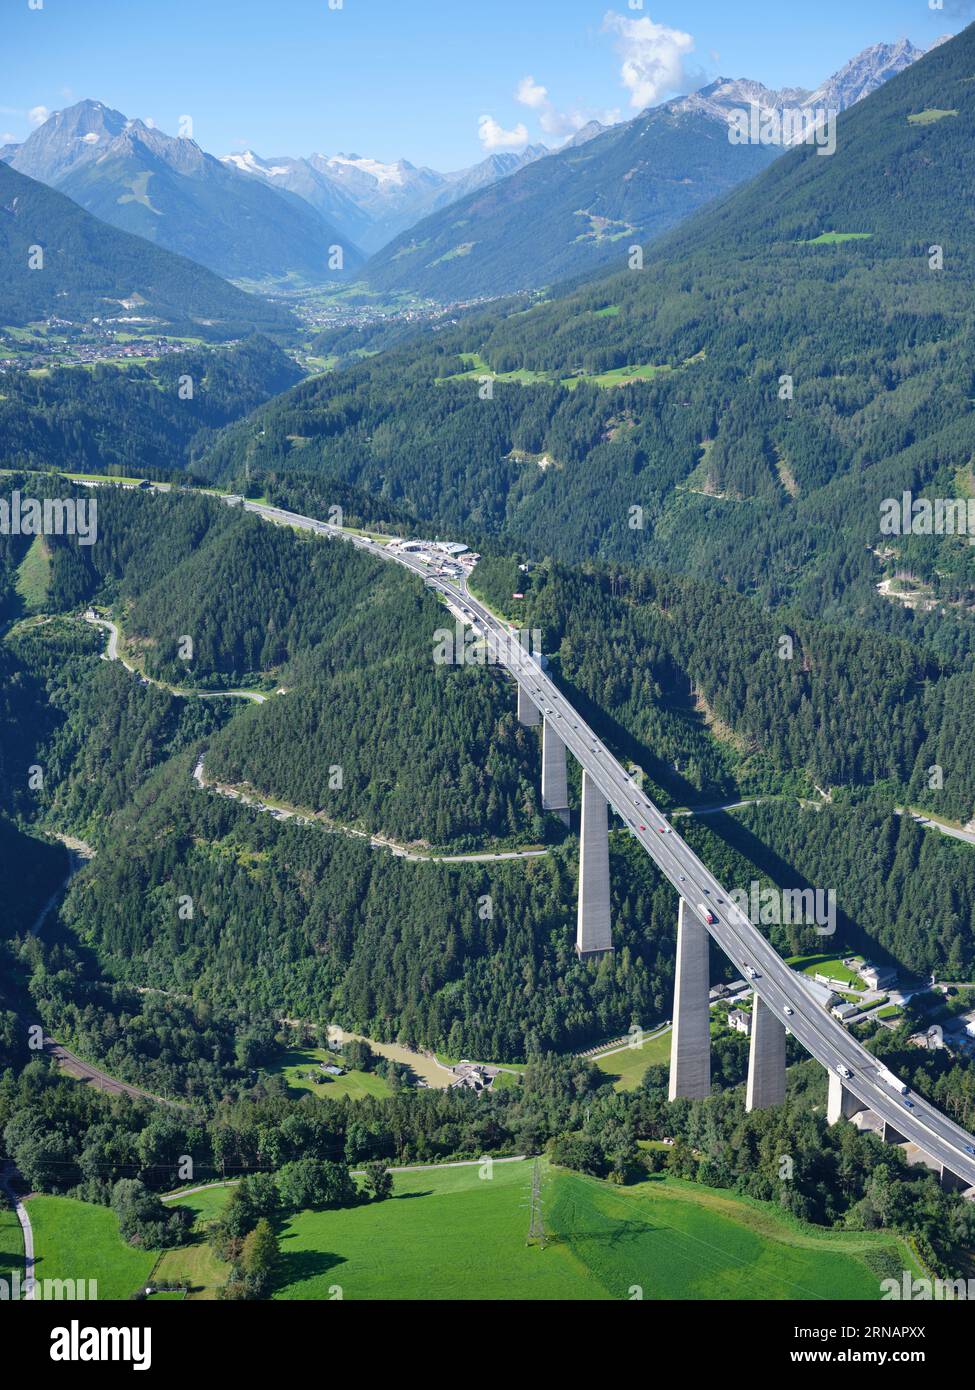 VISTA AEREA. Autostrada A13 del Brennero sul Europabrücke (Ponte d'Europa) con la panoramica valle dello Stubai. Schönberg im Stubaital, Tirolo, Austria. Foto Stock